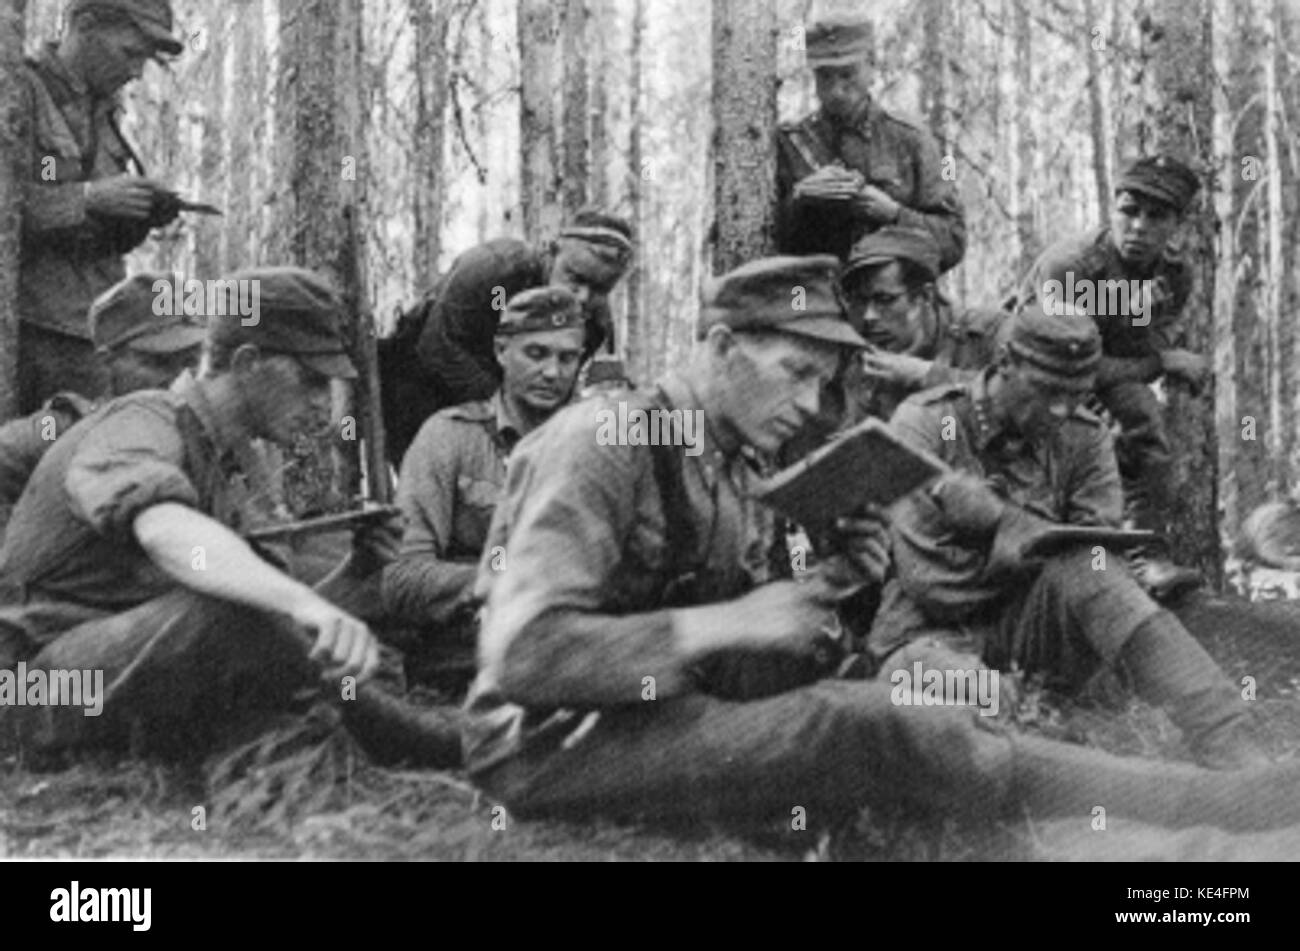 Battalion seitamo of osasto partiainen in battle of ilomantsi Stock Photo